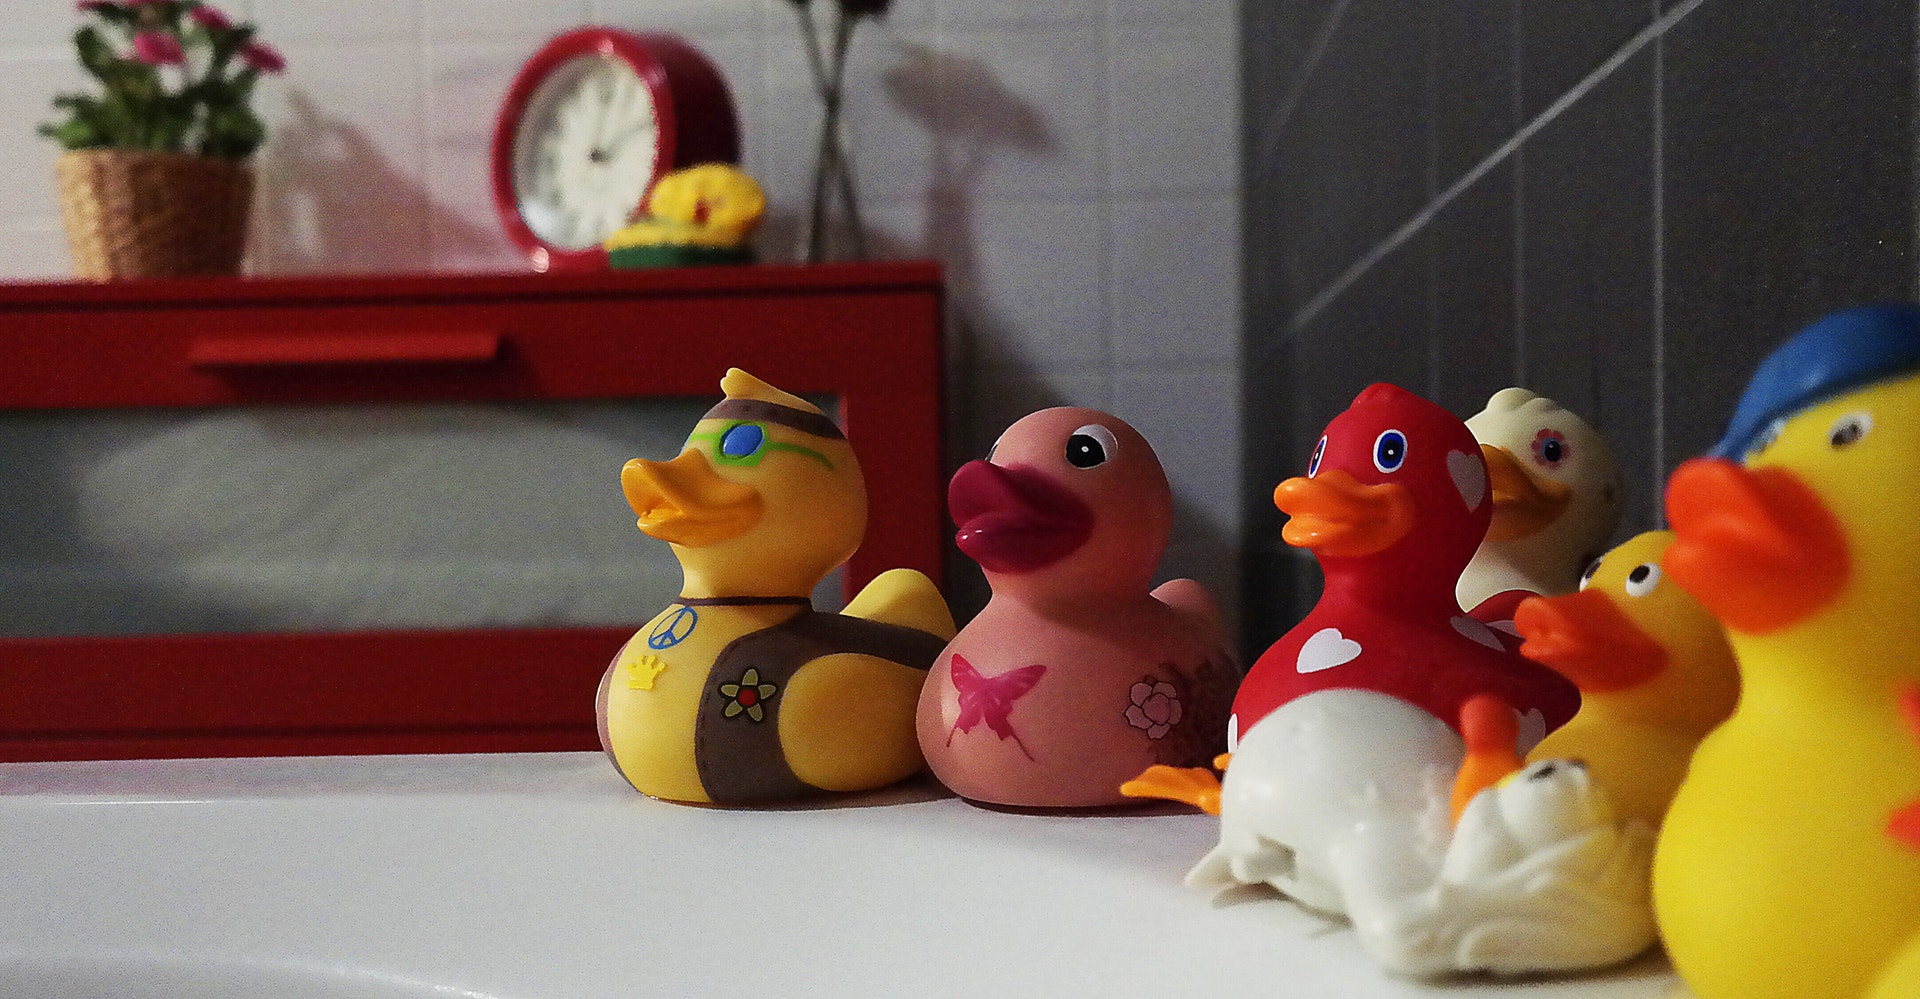 15 Rubber Duck Bathroom Decor Accessories You’ll Love